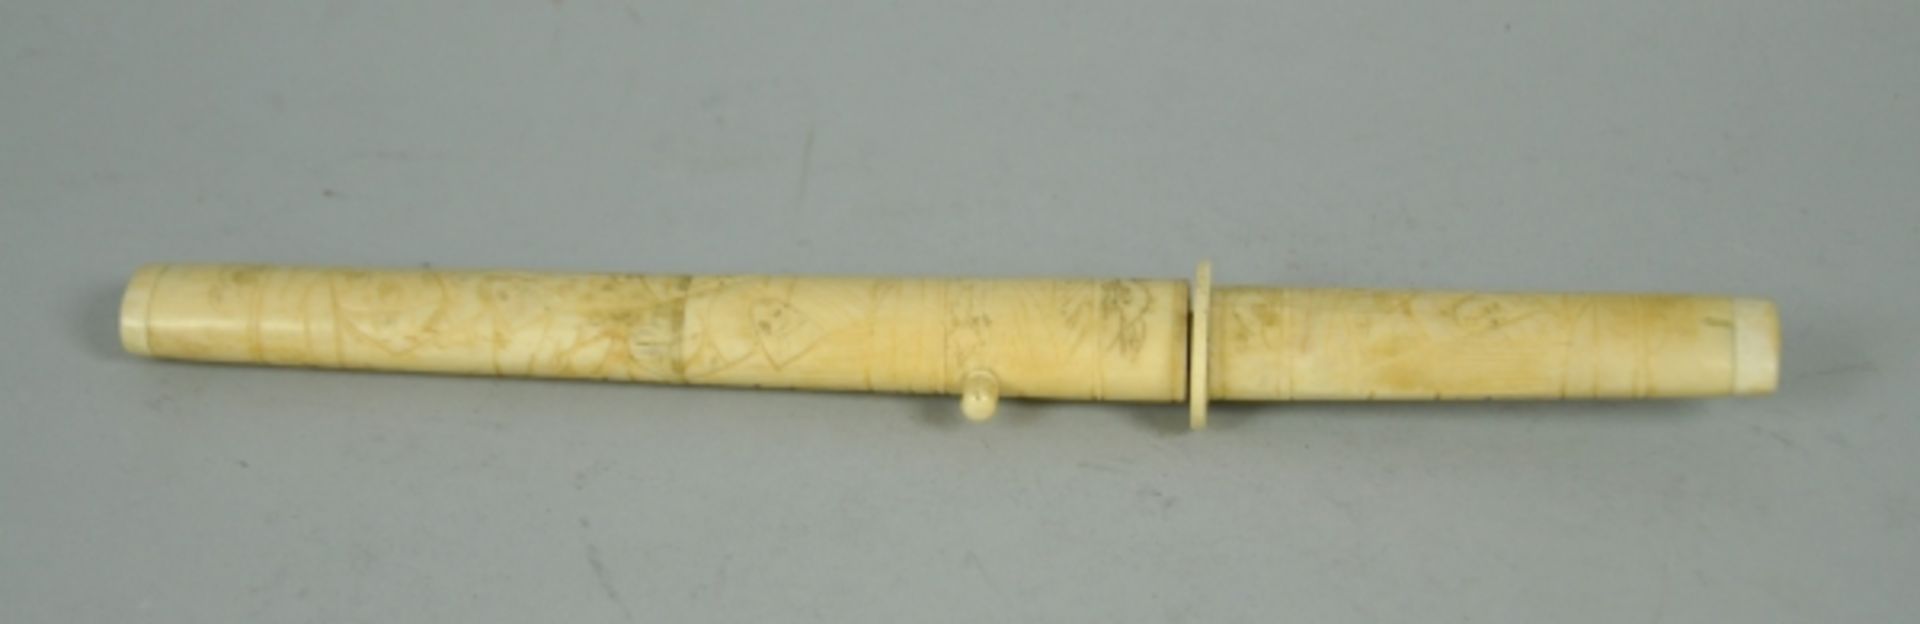 DOLCH Griff u. Scheide aus beschnitztem Bein, Stahlklinge, Asien, L 31cm